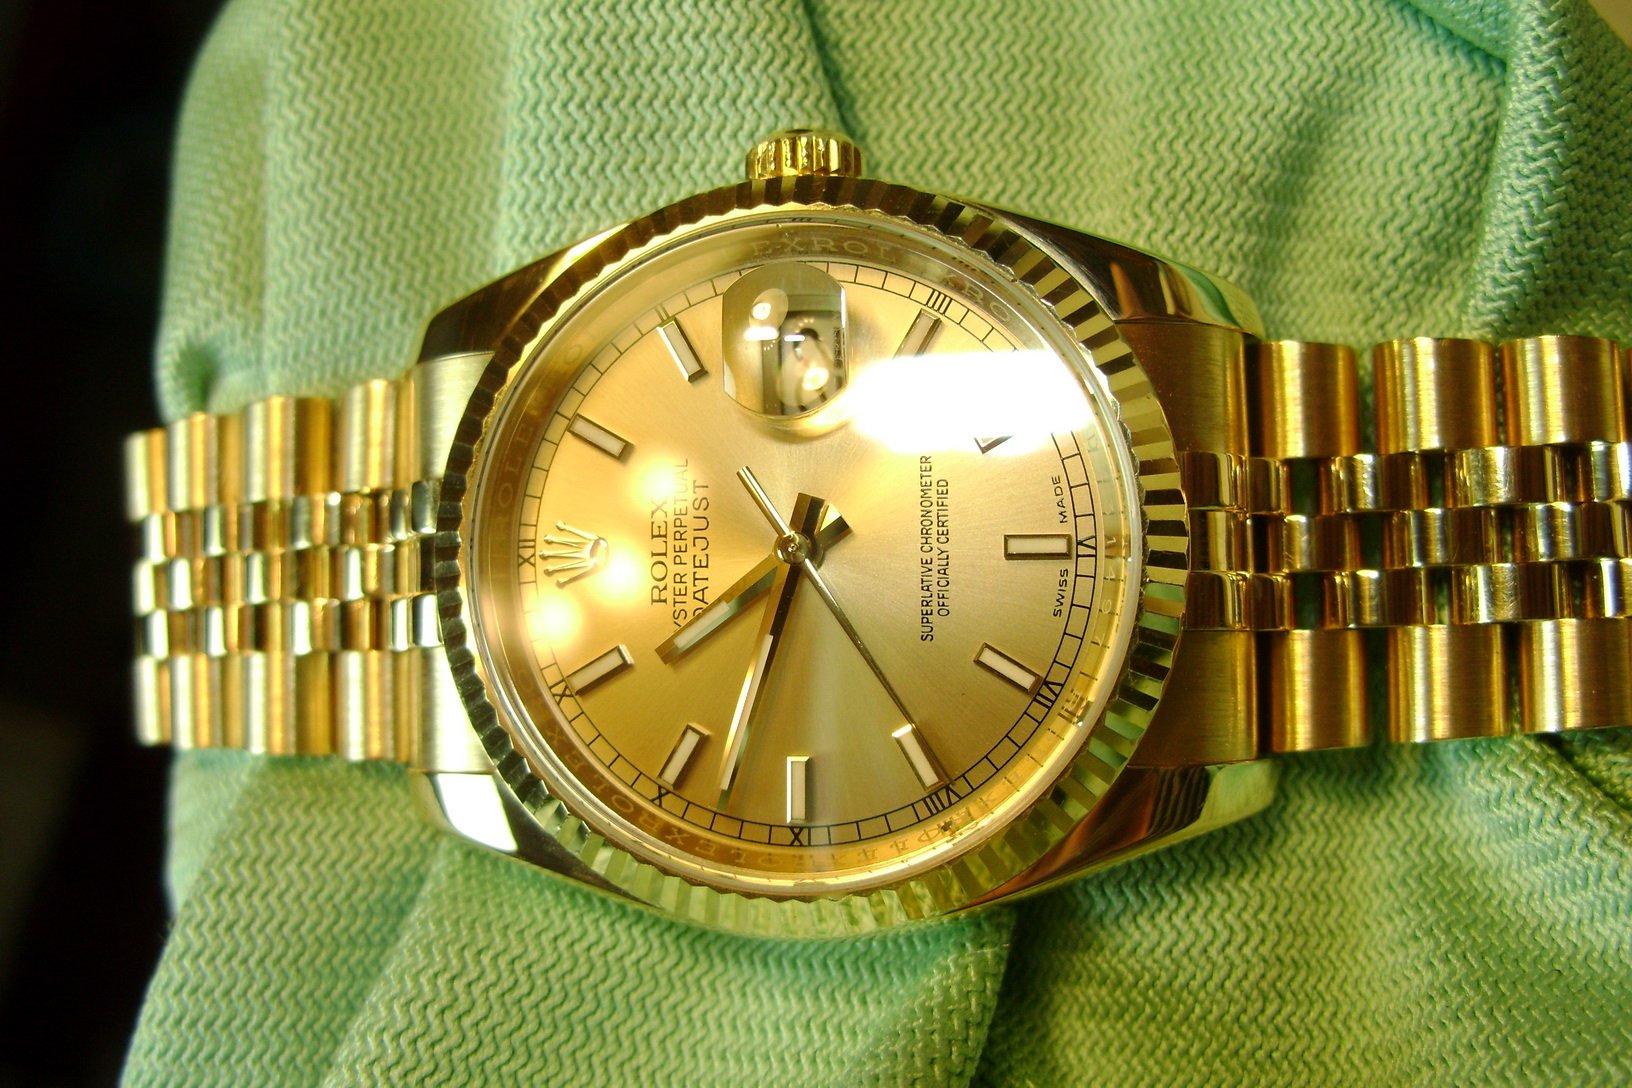 Каталог часов ролекс. Ролекс (NP lc6a g3p). Часы ролекс мужские золотые оригинал. Часы Rolex l070. Часы ролекс женские оригинал.